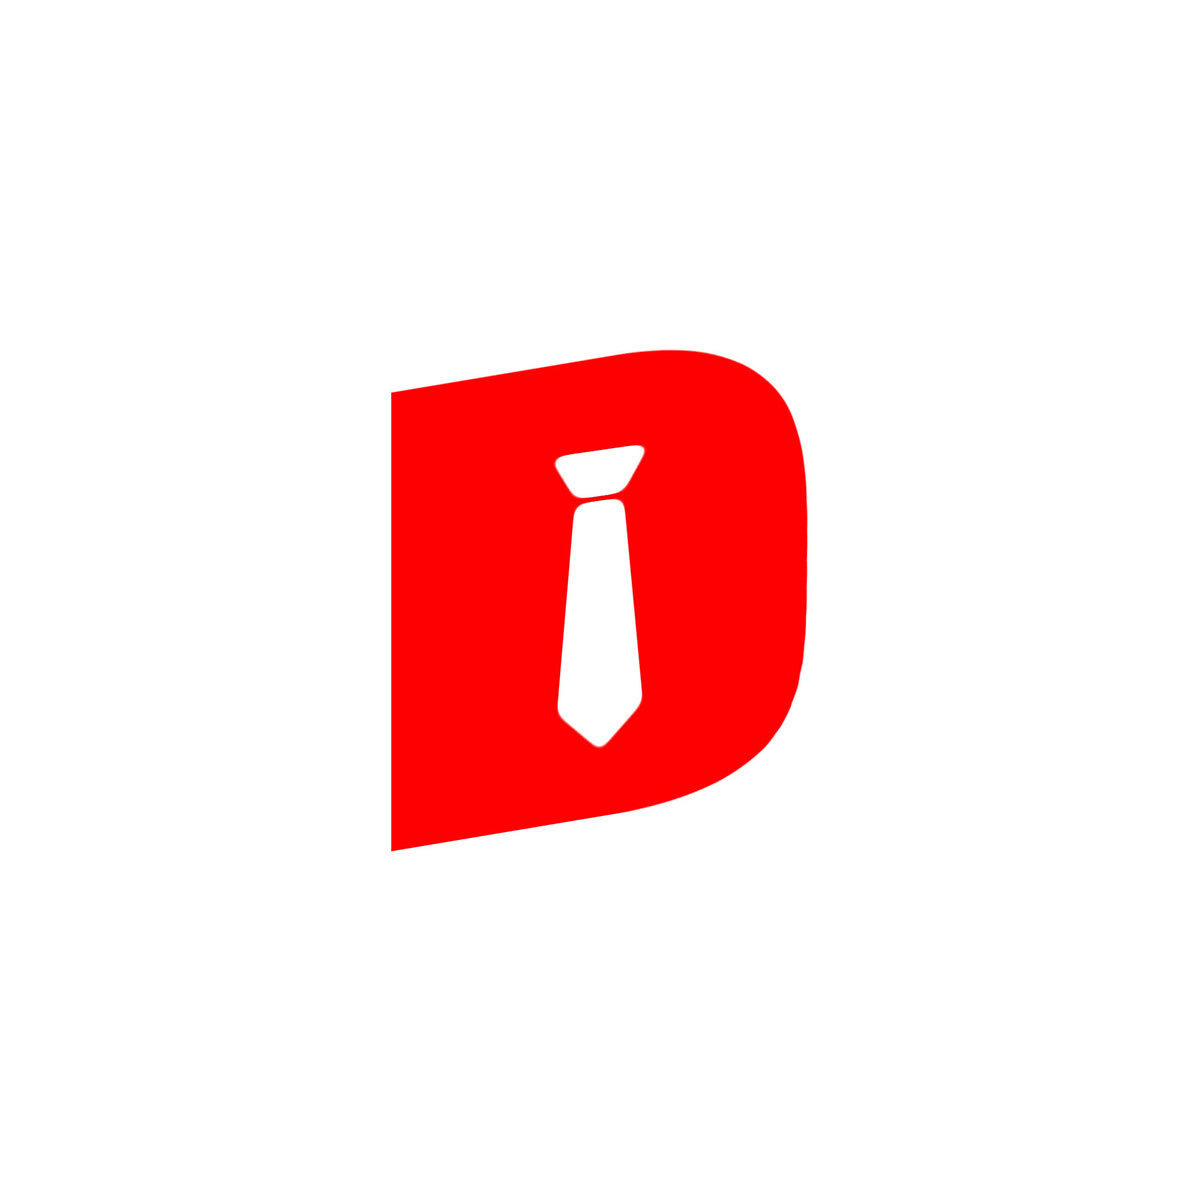 advertisement brandning   commercial deisgn logo logos social media